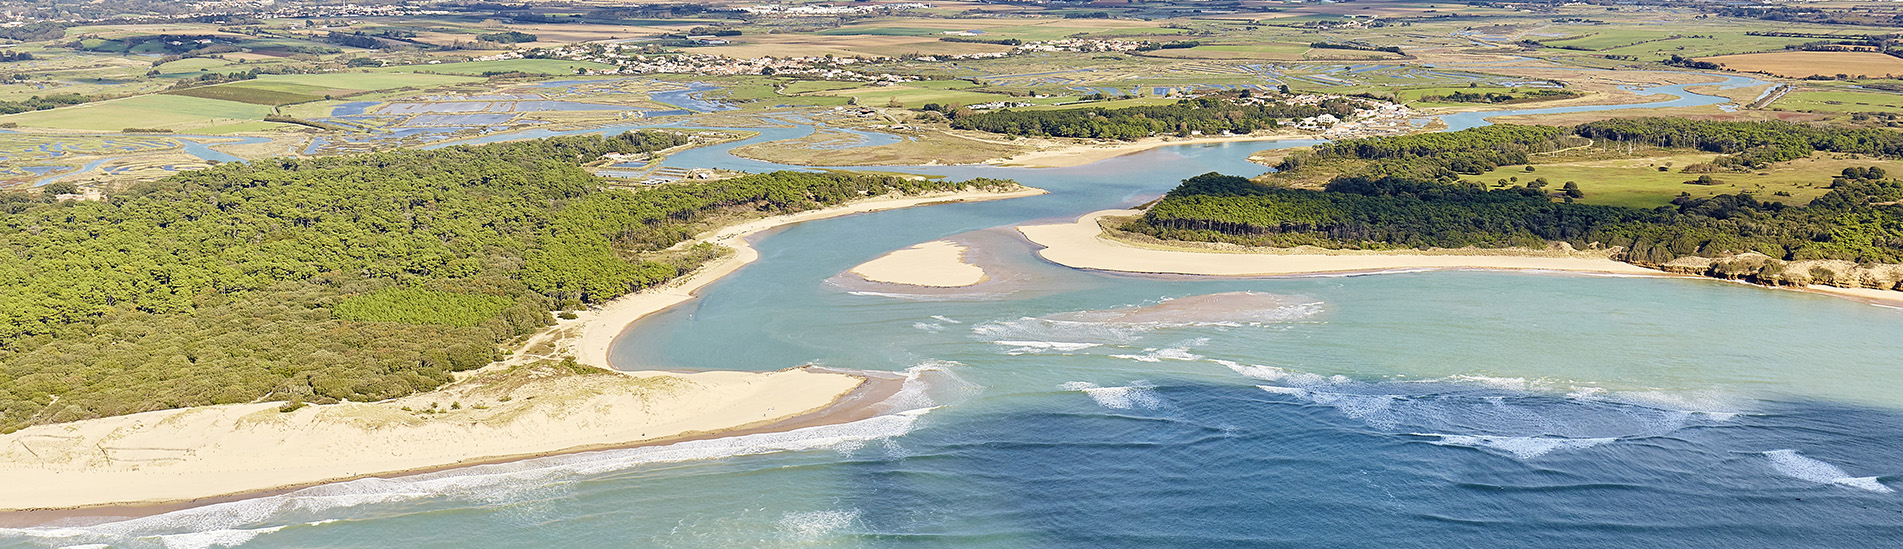 Vue aérienne d'une côte avec des plages de sable, des eaux bleu turquoise et des zones humides, entourée de terres agricoles et de quelques bâtiments.